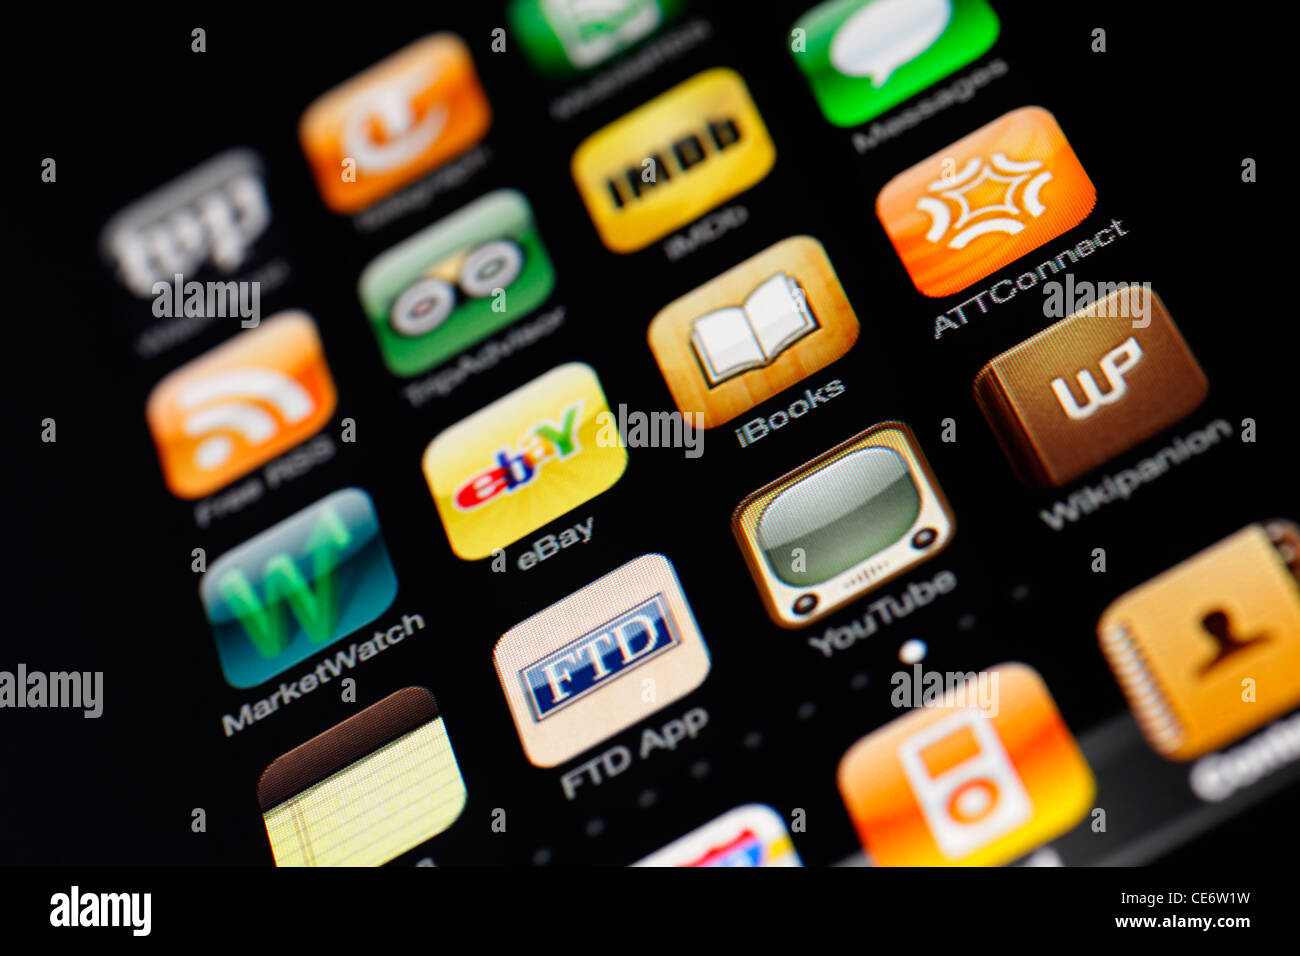 Münster, 26. Januar 2012: Bild des Iphone-Touchscreens. Display zeigt eine Sammlung von nützlichen apps mit Orange und Stockfoto